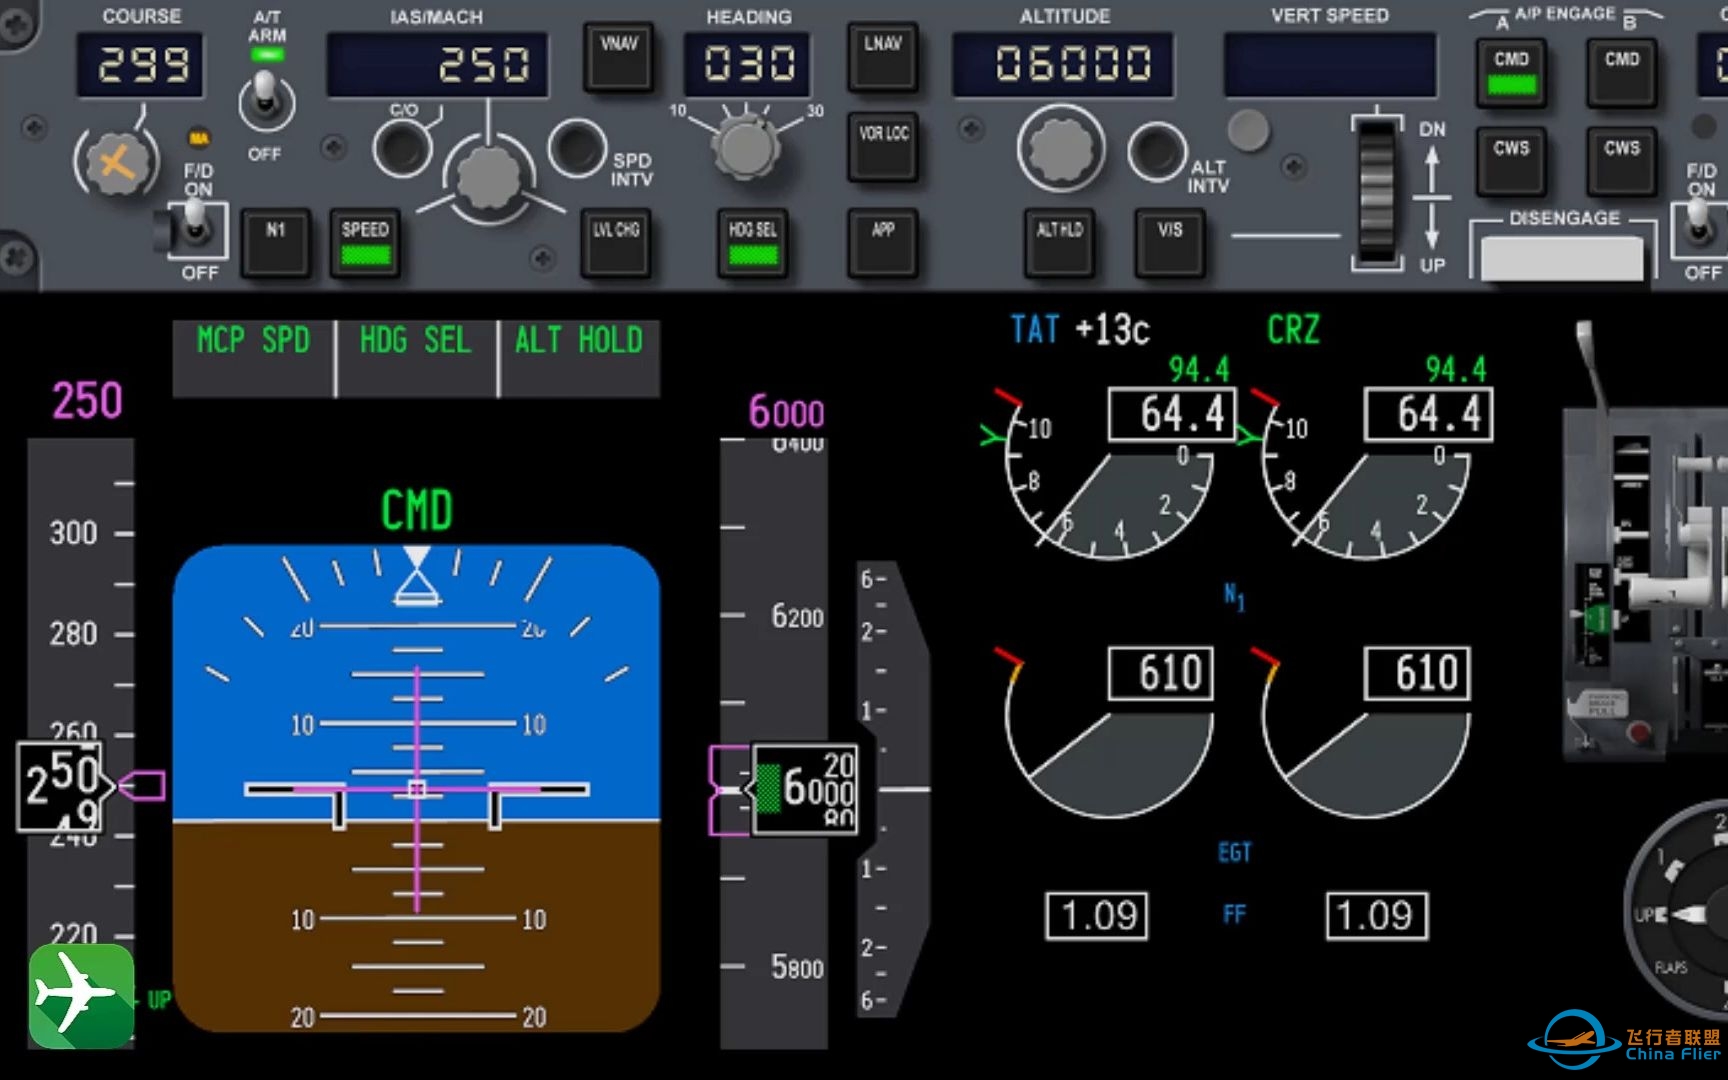 波音737NG 2.使用高度层变化(LVL CHG)爬升（仪表视角）-5160 